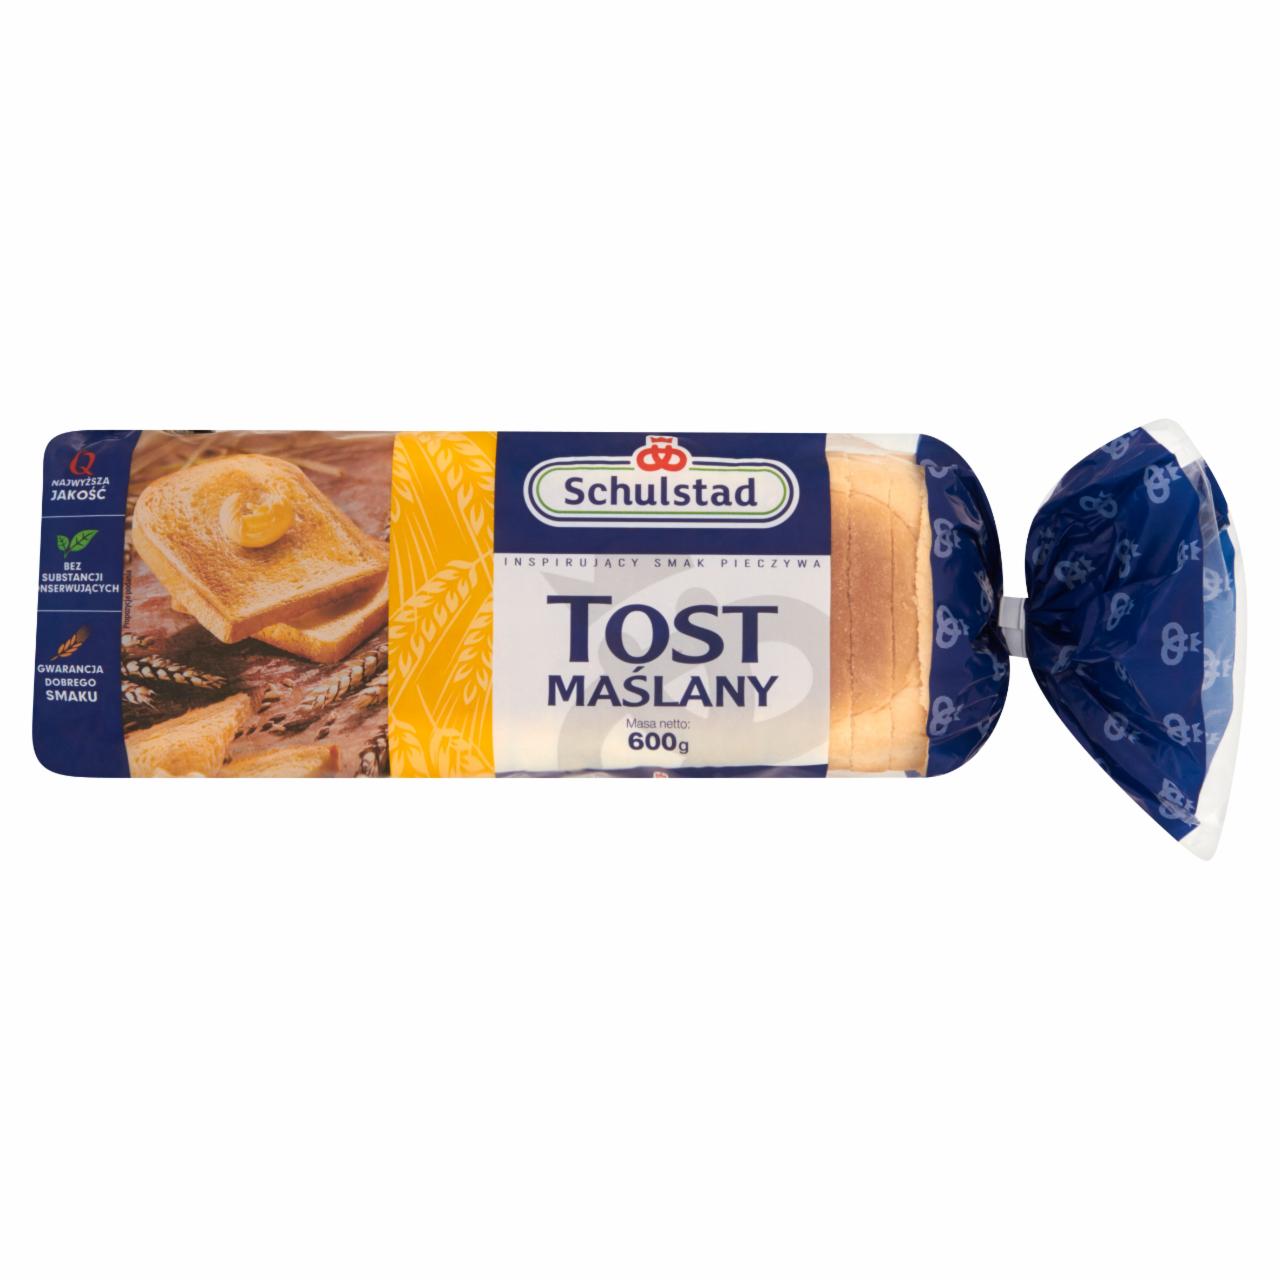 Zdjęcia - Schulstad Tost maślany Chleb tostowy 600 g